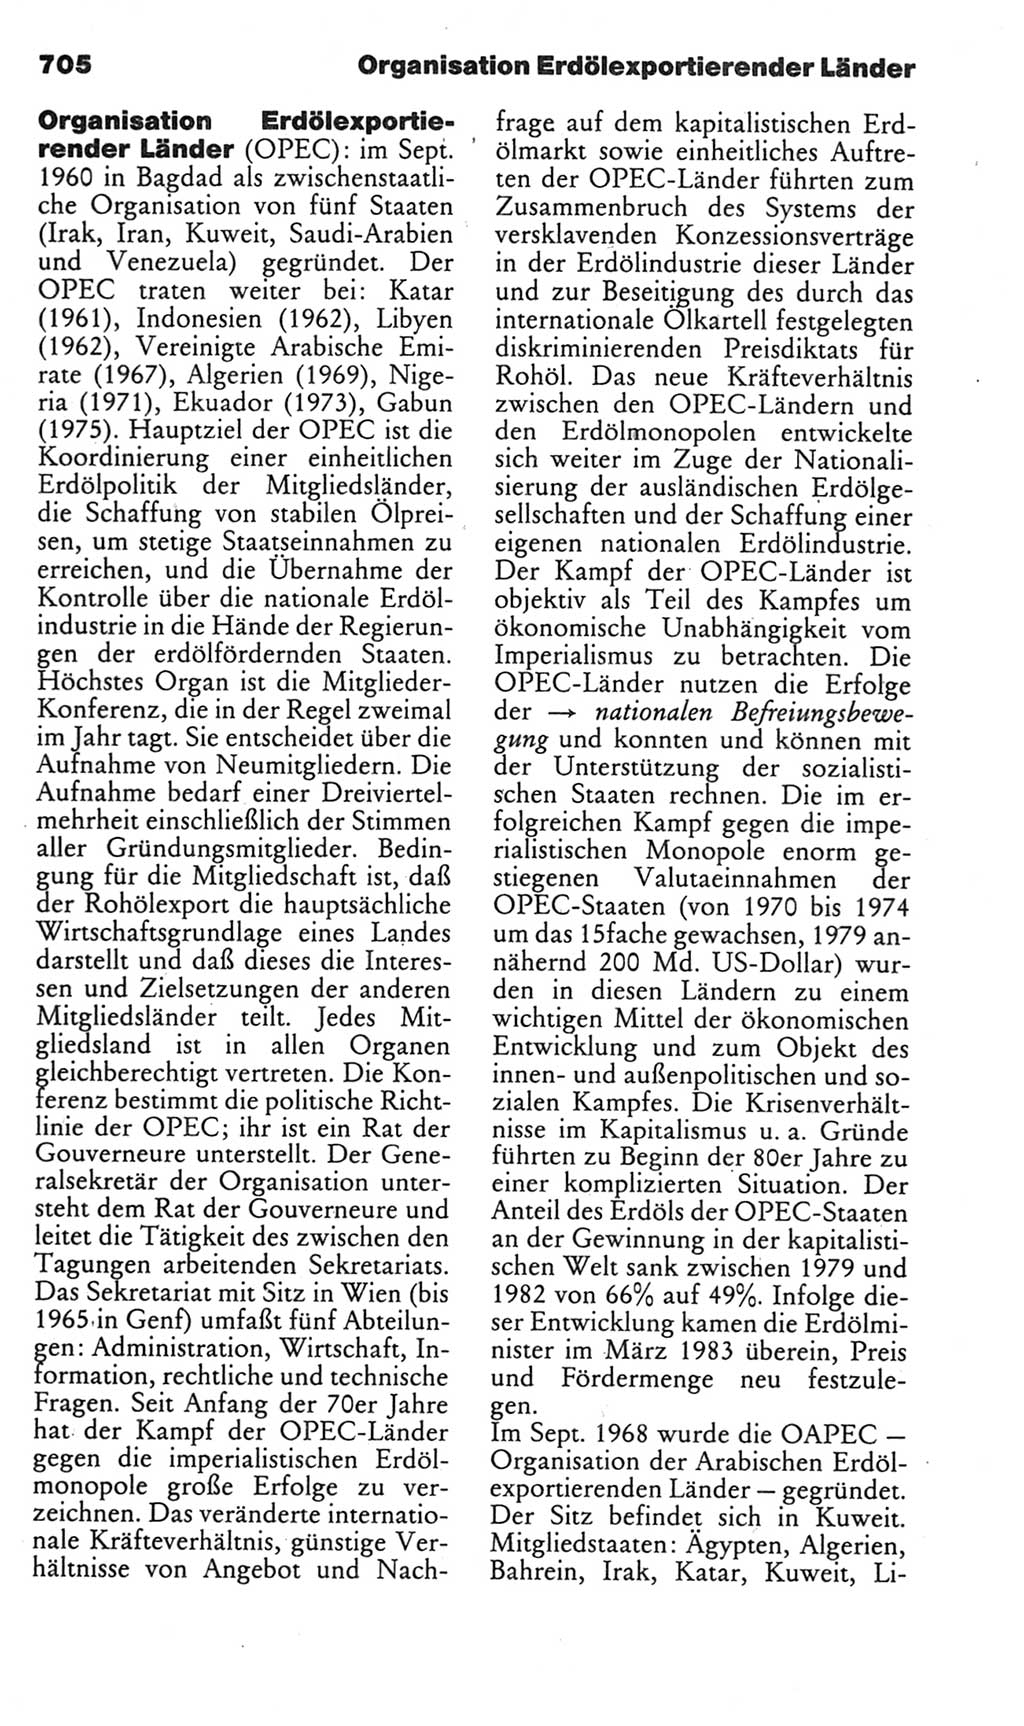 Kleines politisches Wörterbuch [Deutsche Demokratische Republik (DDR)] 1985, Seite 705 (Kl. pol. Wb. DDR 1985, S. 705)